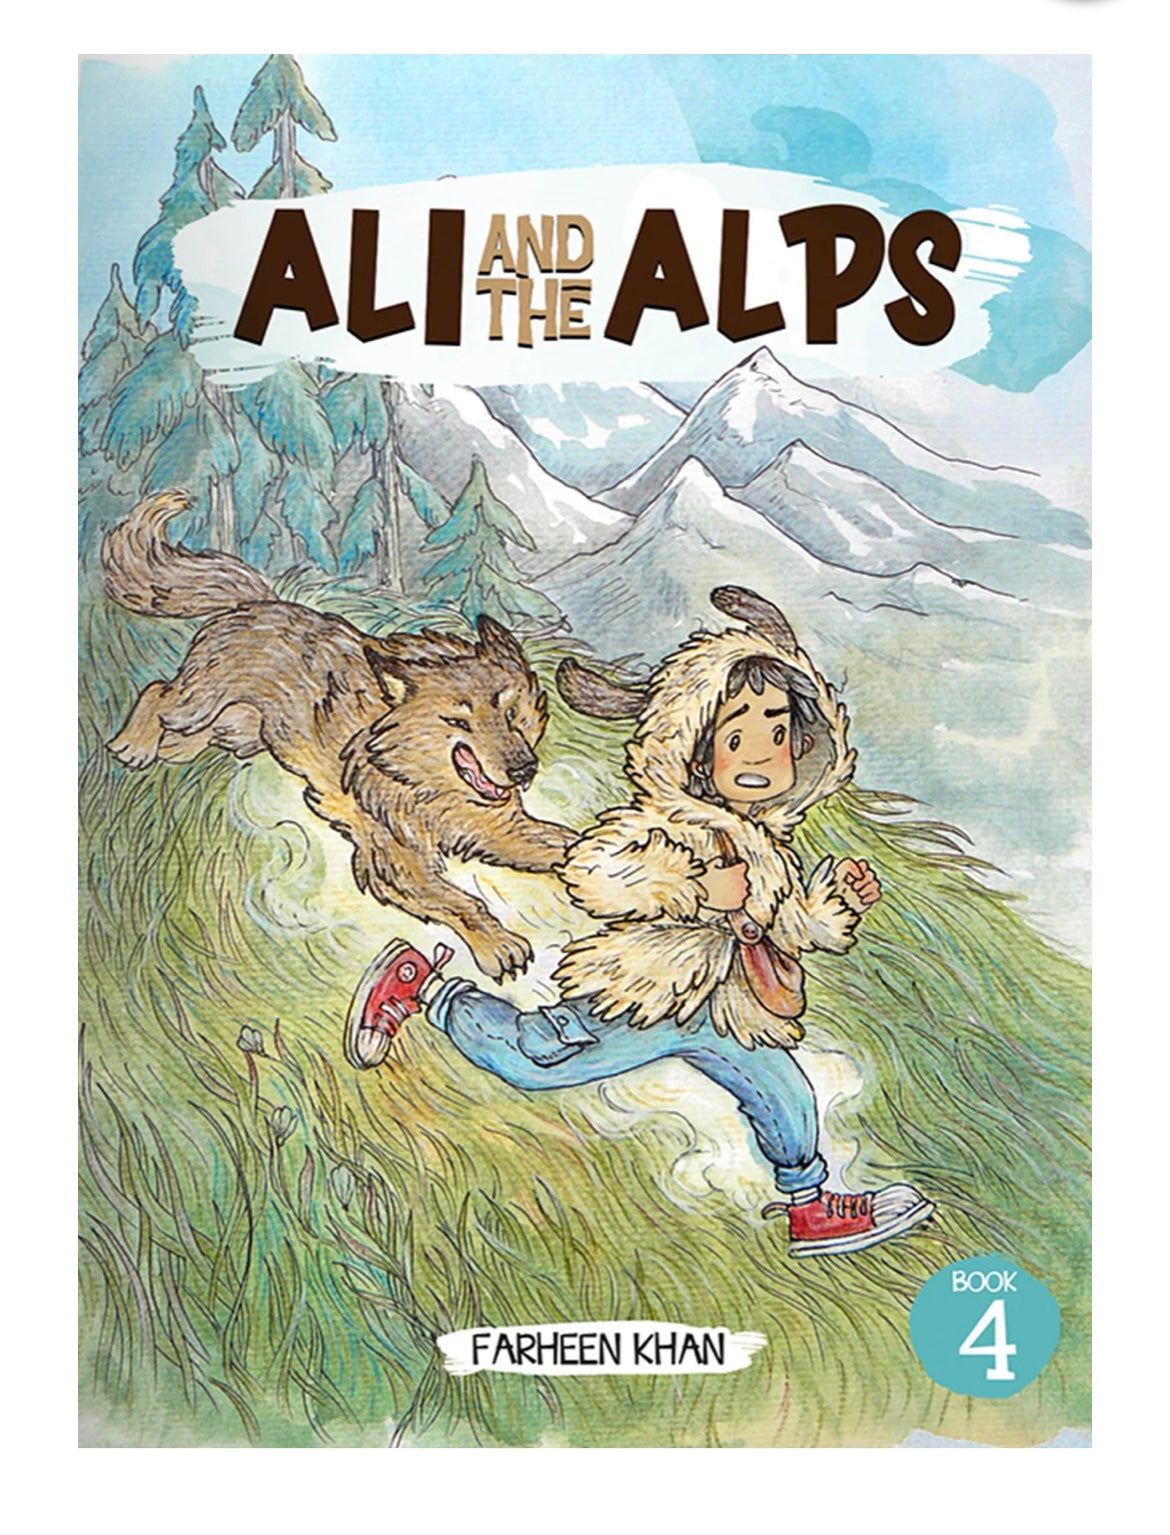 Ali and Alps